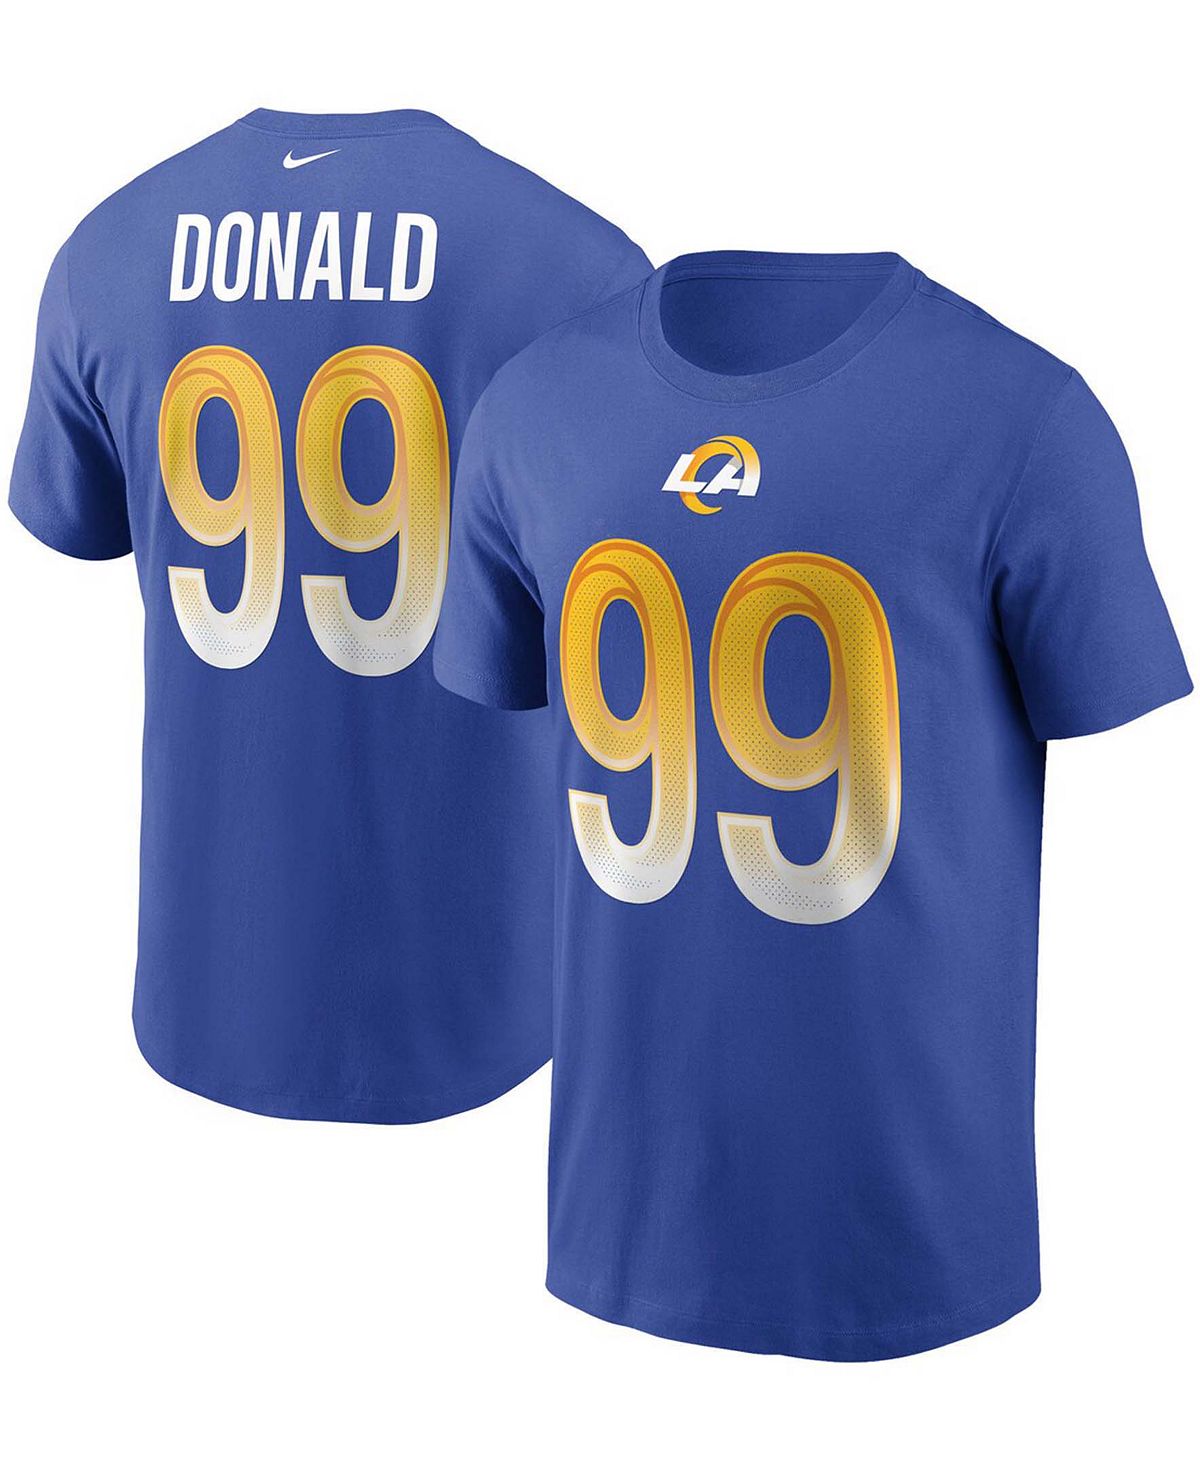 Мужская футболка с именем и номером Aaron Donald Royal Los Angeles Rams Nike